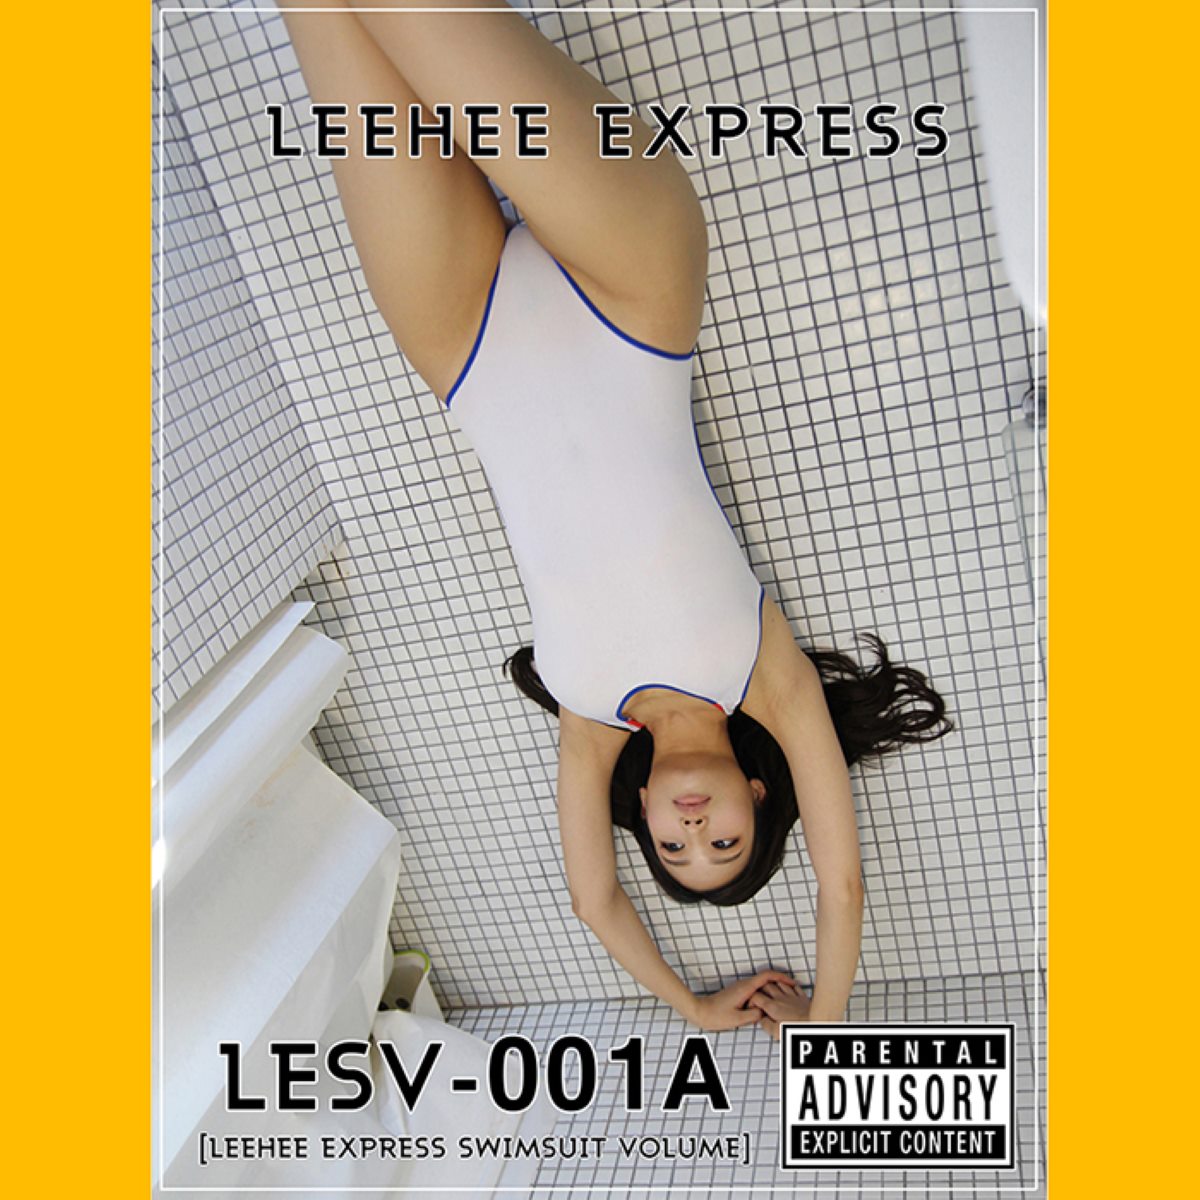 LEEHEE EXPRESS LESV 001A LEEHEEEUN 0048 1579218540.jpg